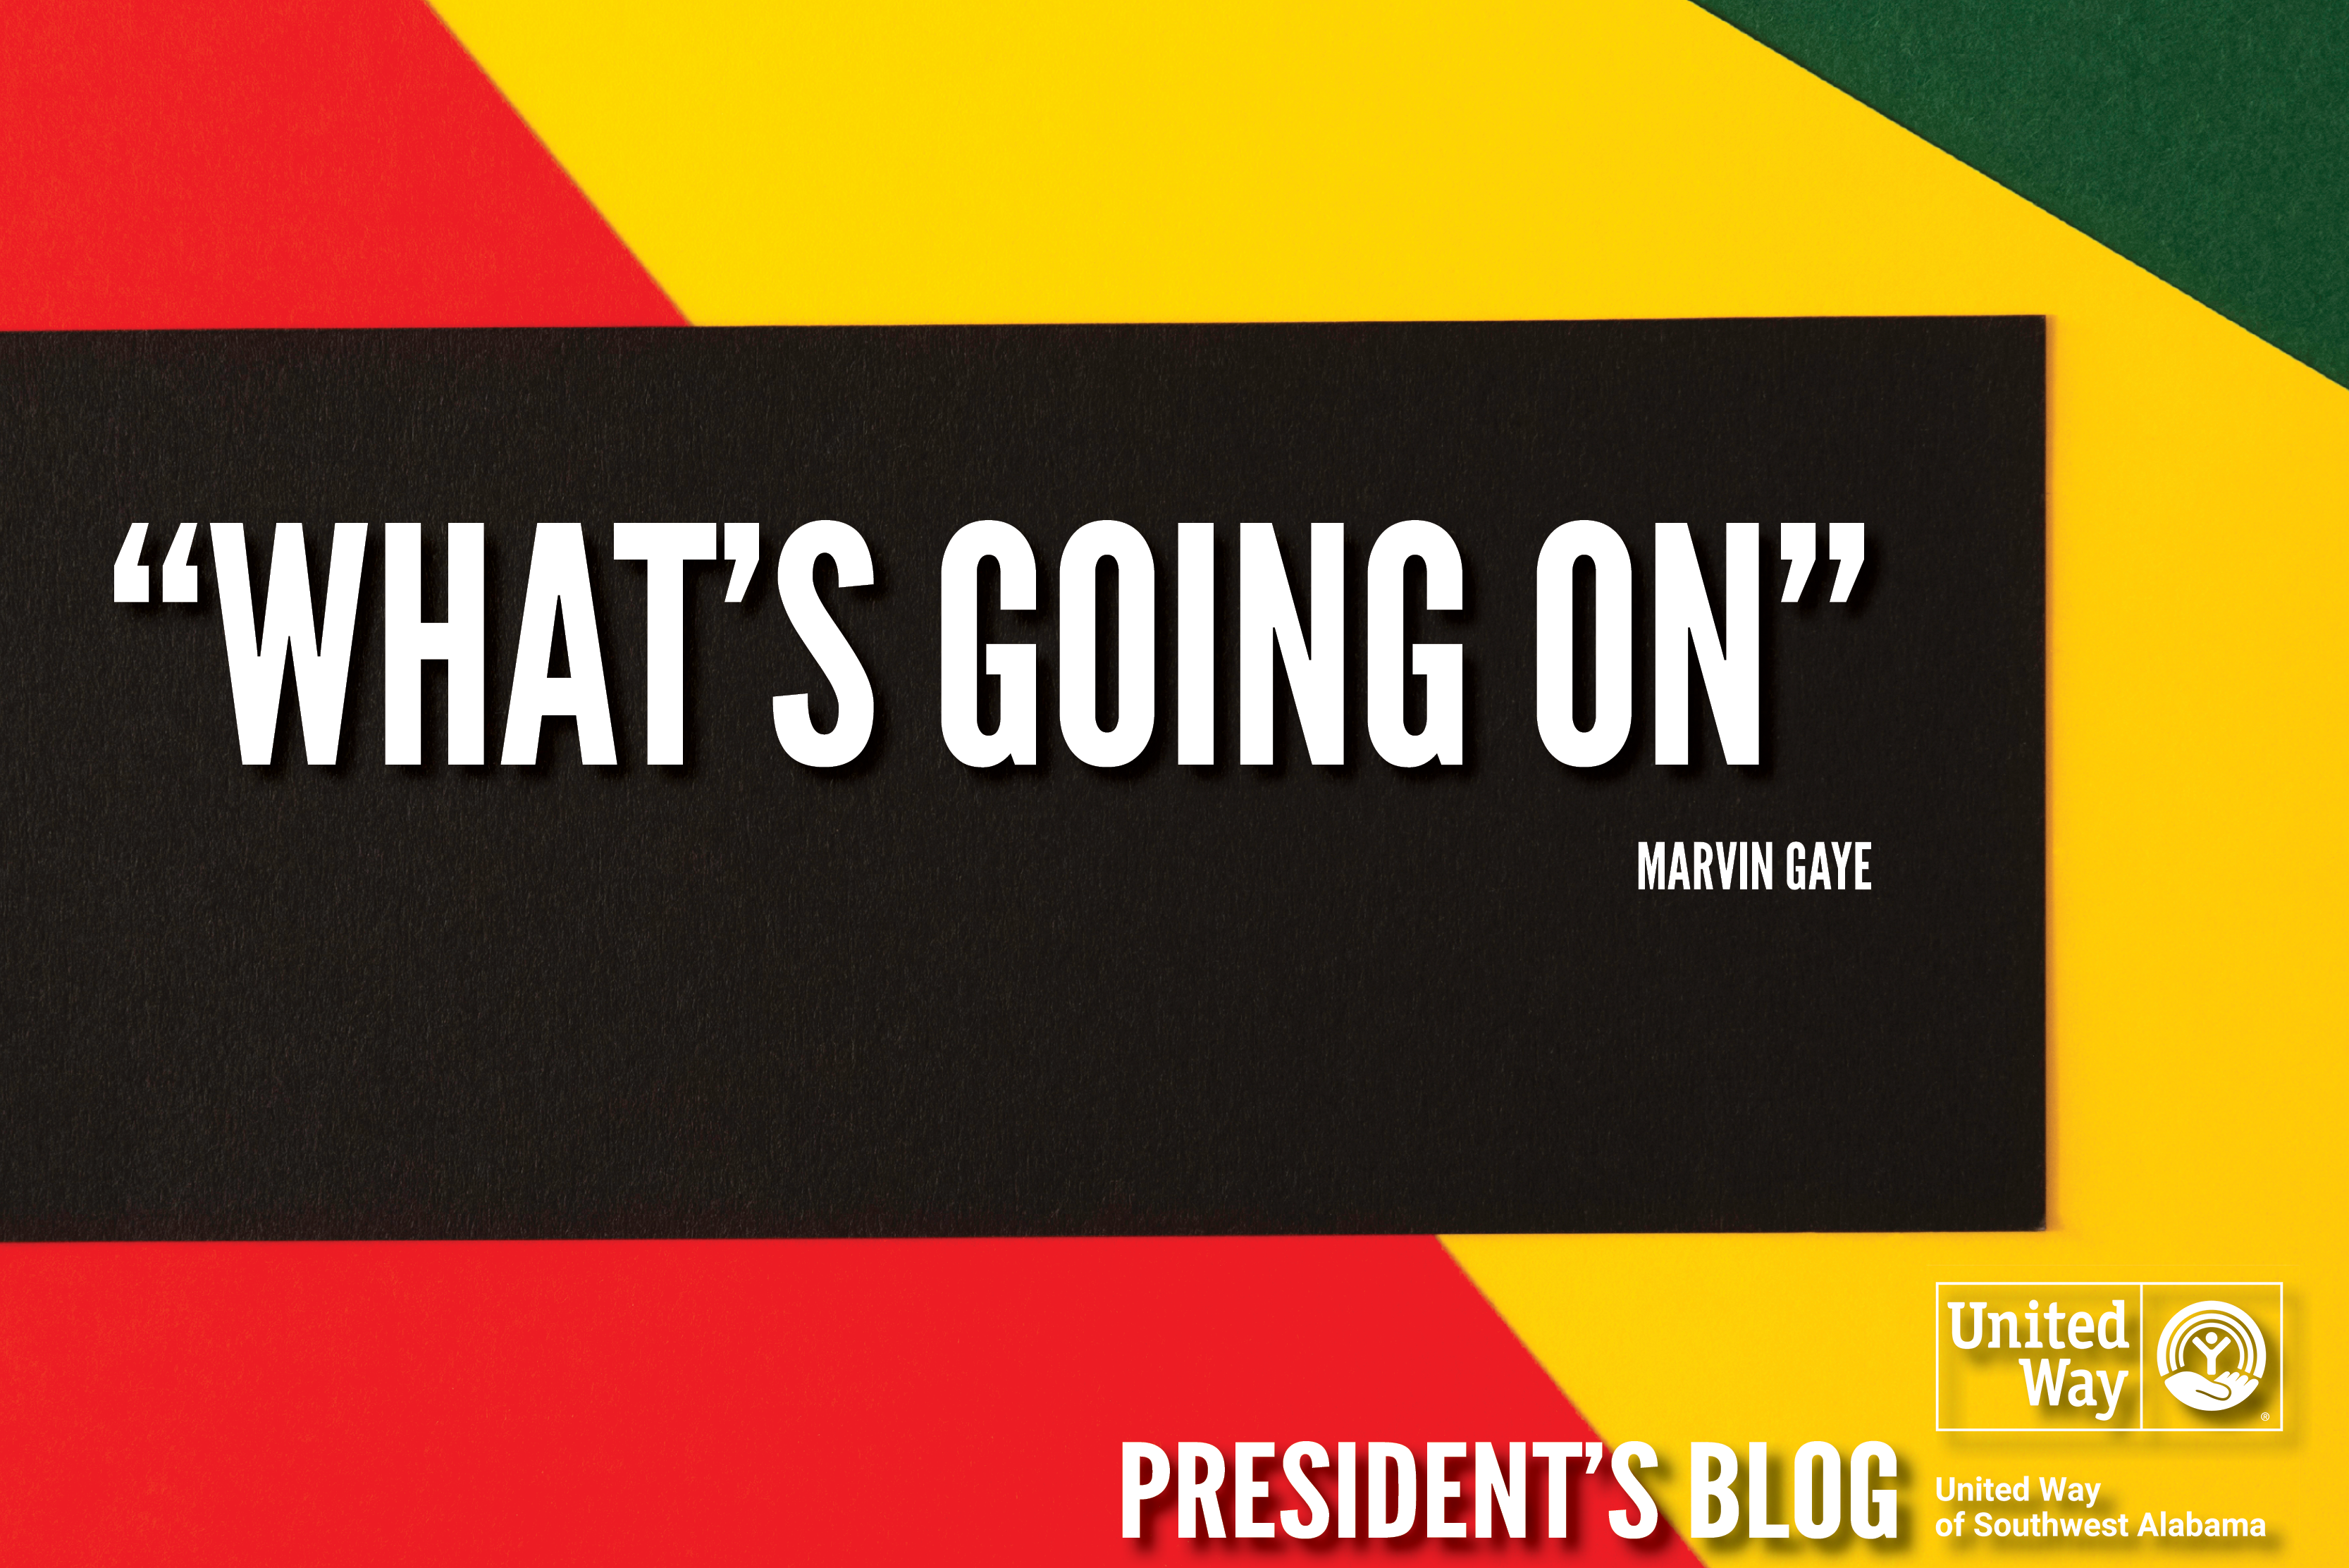 February President's Blog "What's Going On"